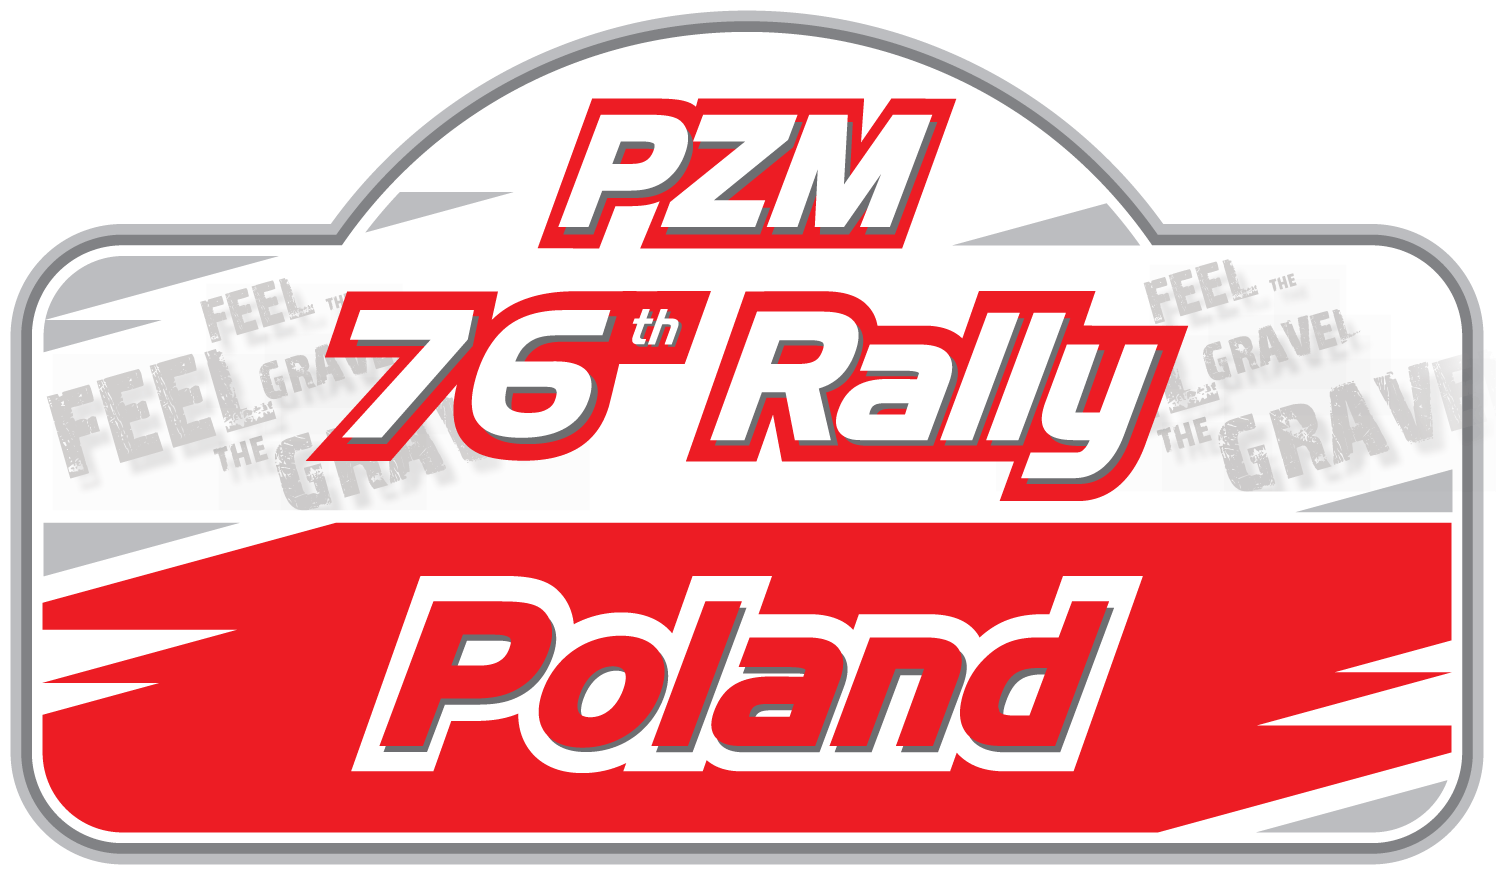 Poland Logo - PZM 76th Rally Poland - FIA ERC | European Rally Championship